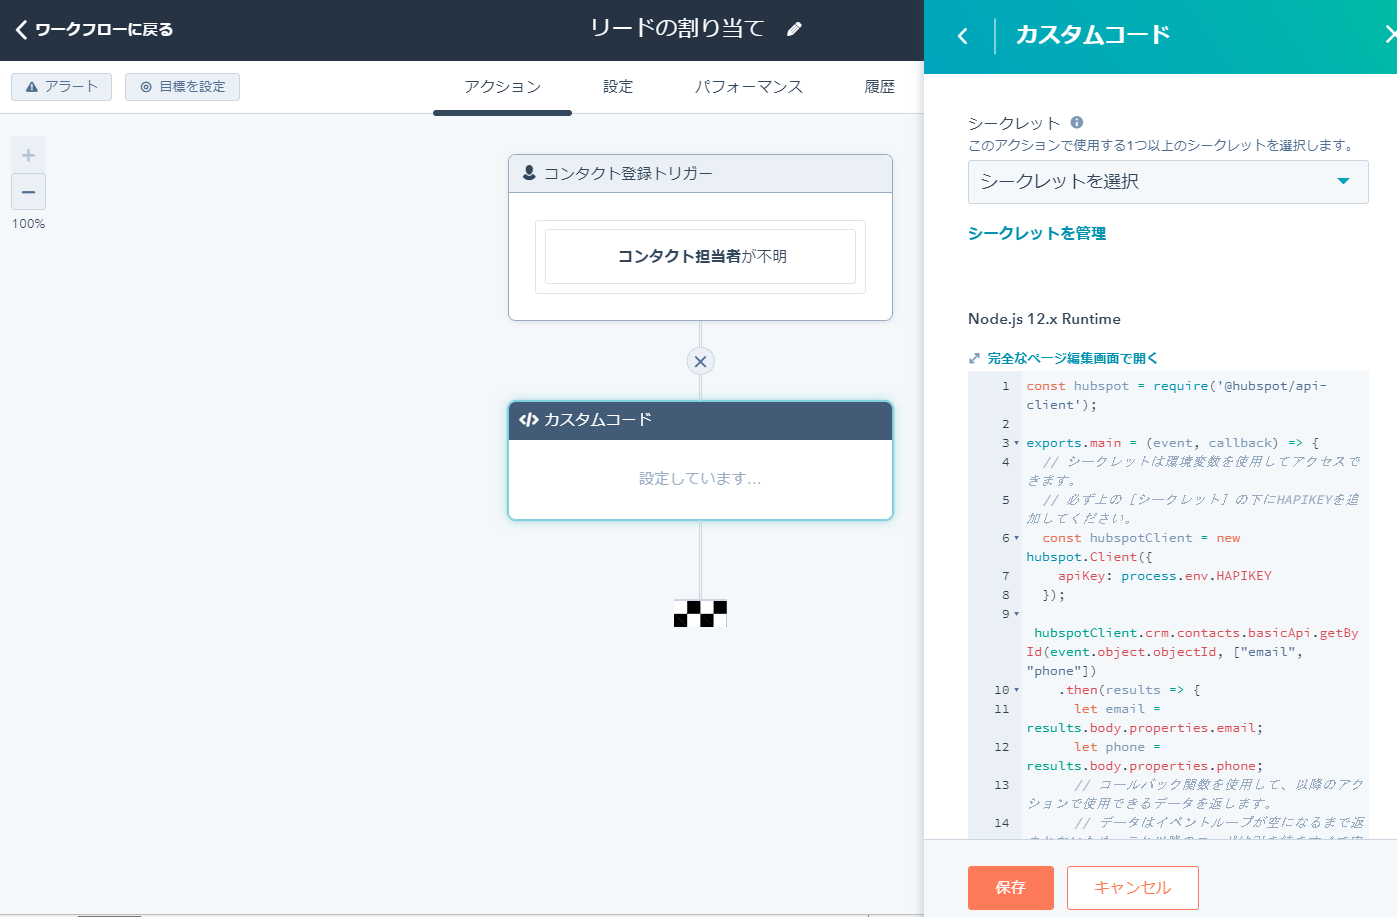 automation-customization-screenshot_ja